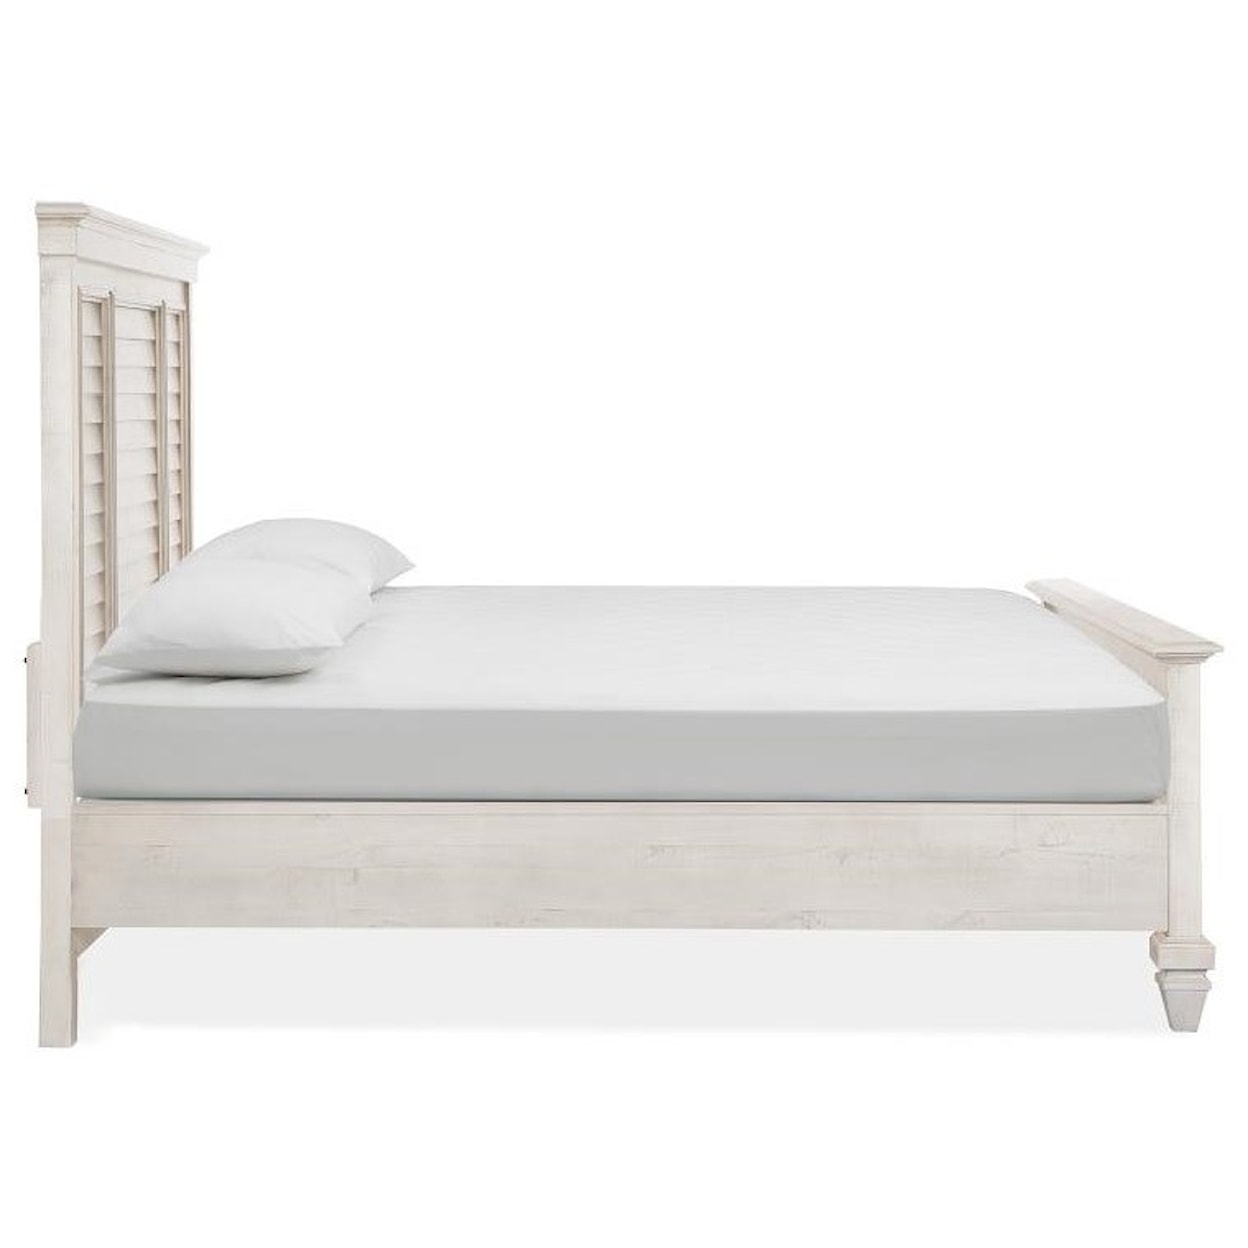 Magnussen Home Newport Bedroom Queen Shutter Panel Bed